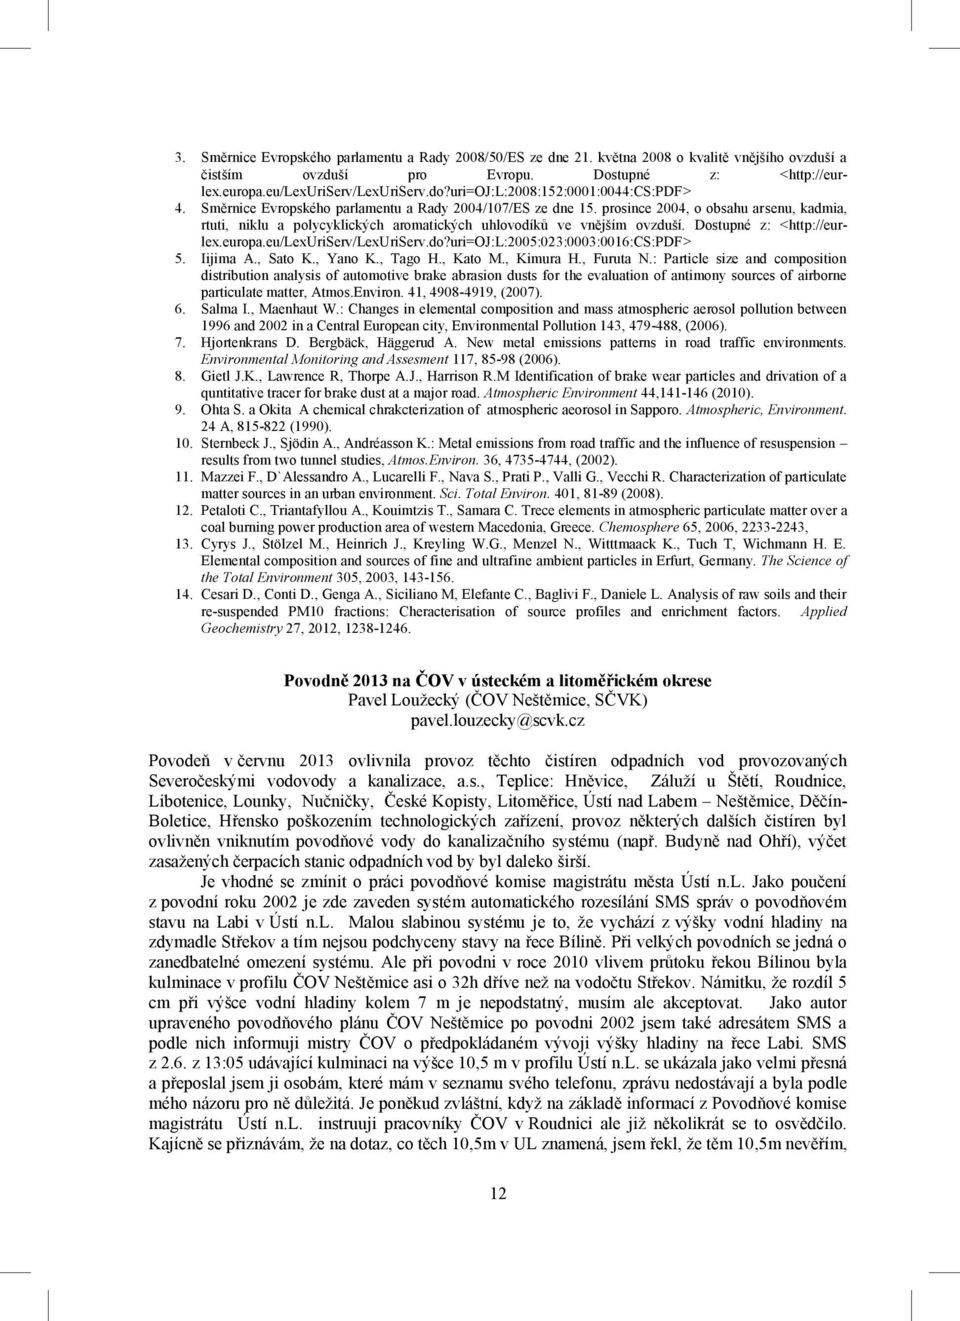 prosince 2004, o obsahu arsenu, kadmia, rtuti, niklu a polycyklických aromatických uhlovodíků ve vnějším ovzduší. Dostupné z: <http://eurlex.europa.eu/lexuriserv/lexuriserv.do?